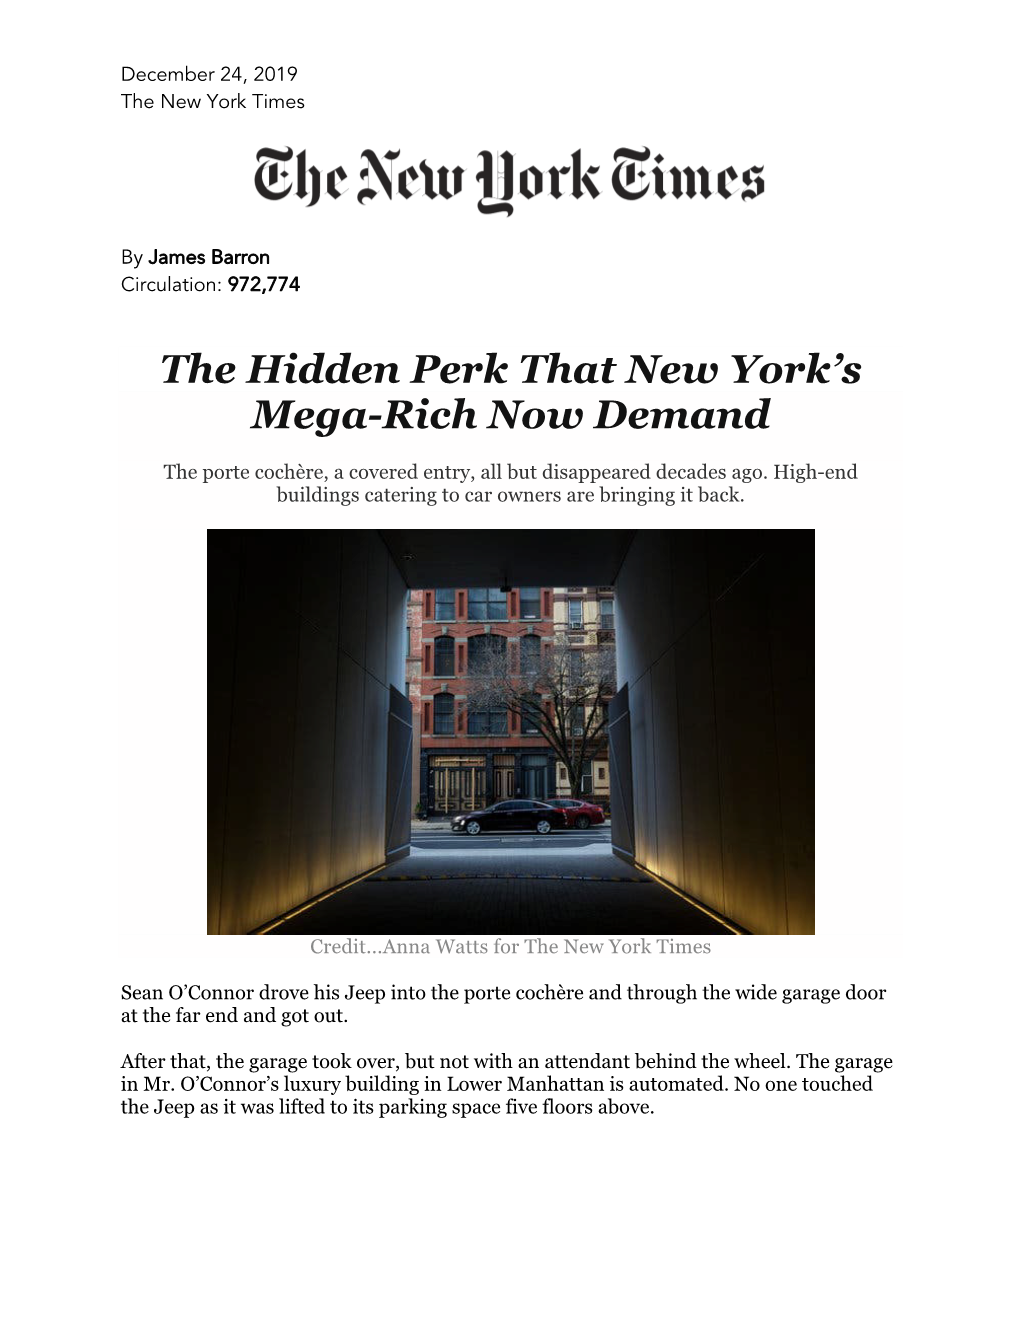 The Hidden Perk That New York's Mega-Rich Now Demand